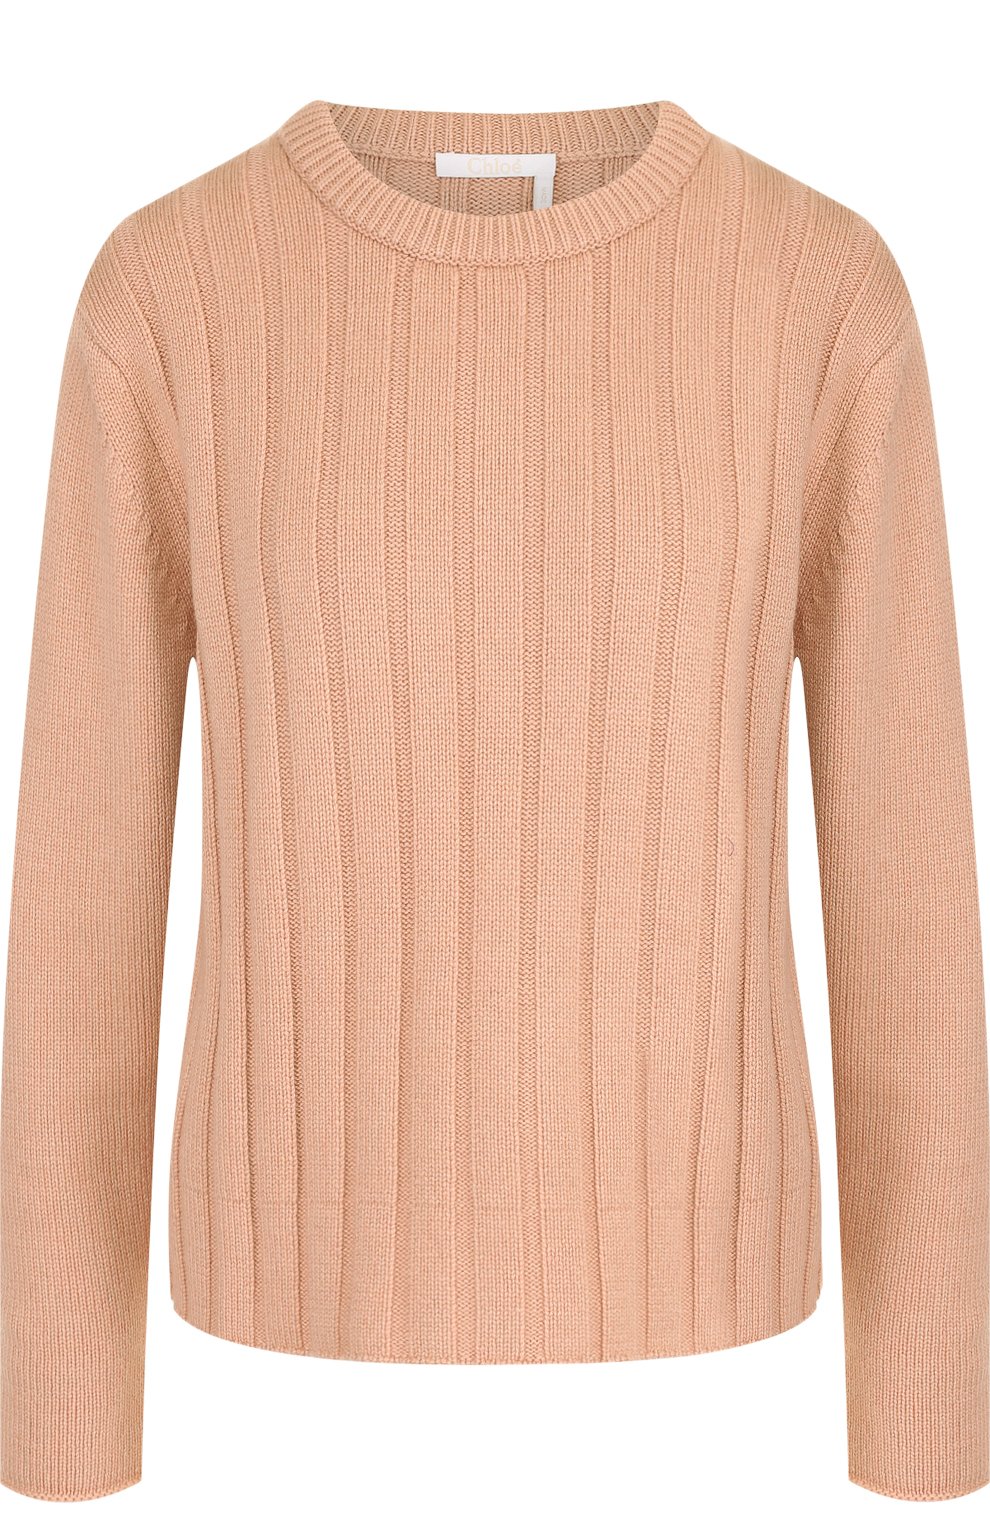 Трикотаж Chloé, Однотонный кашемировый пуловер с круглым вырезом Chloé, Китай, Розовый, Кашемир: 100%;, 4446399  - купить